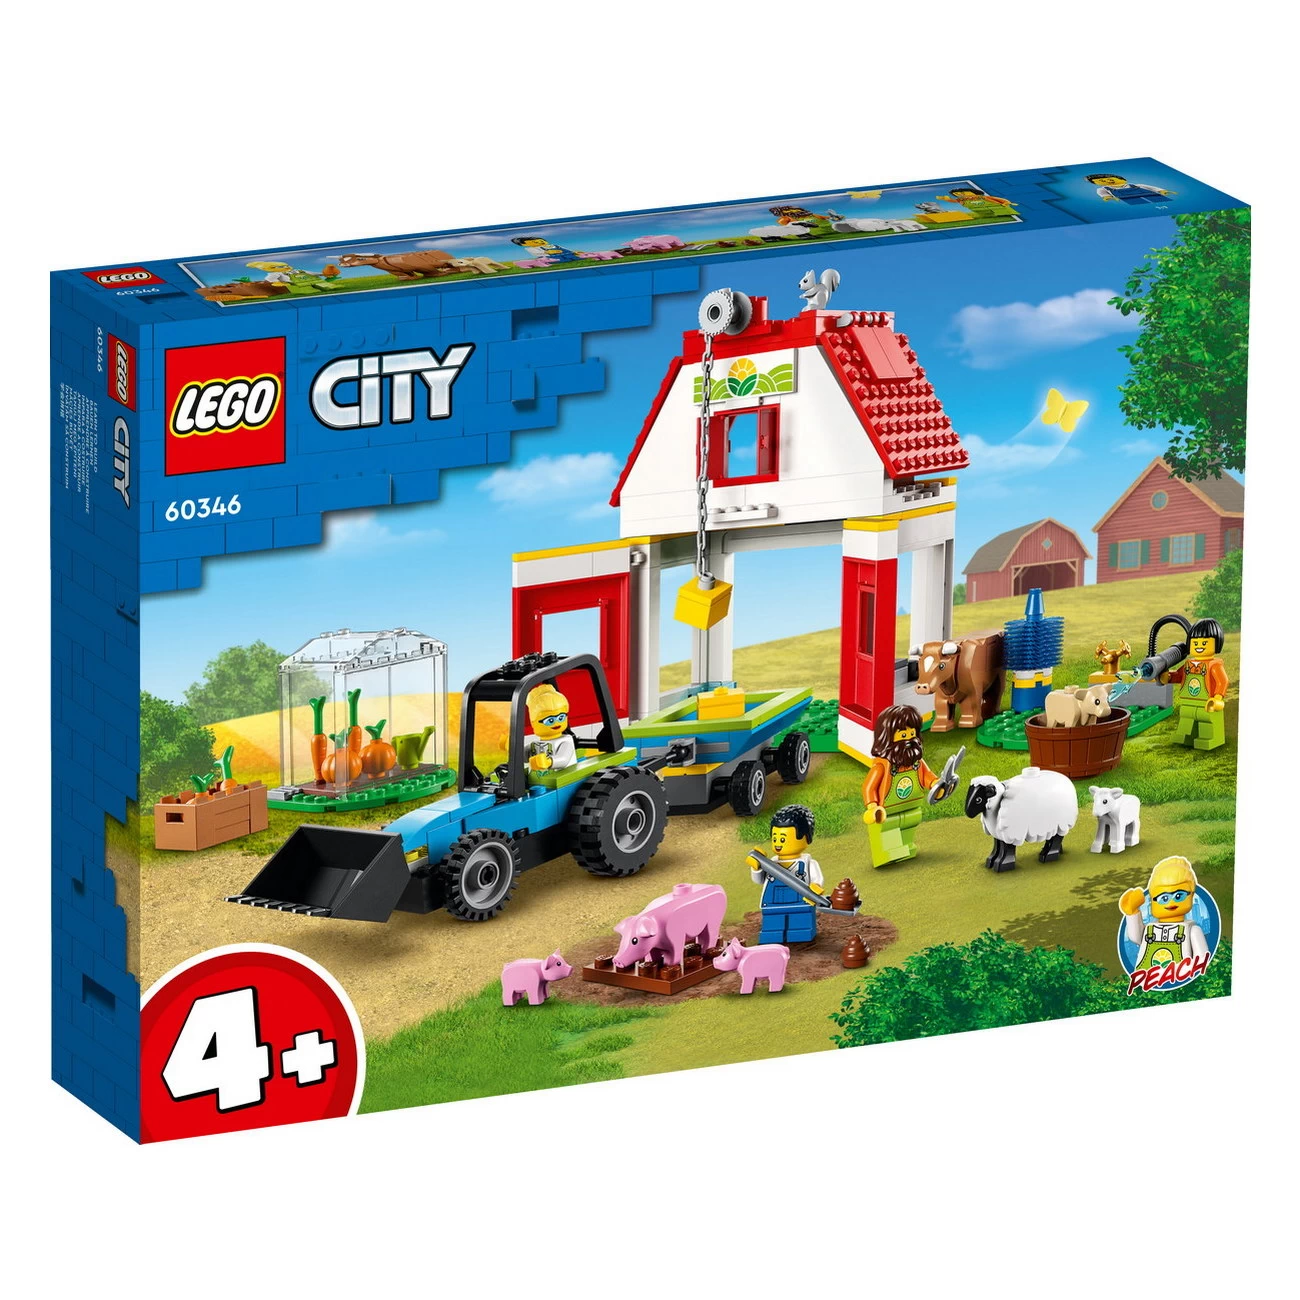 LEGO City 60346 - Bauernhof mit Tieren - City Farm